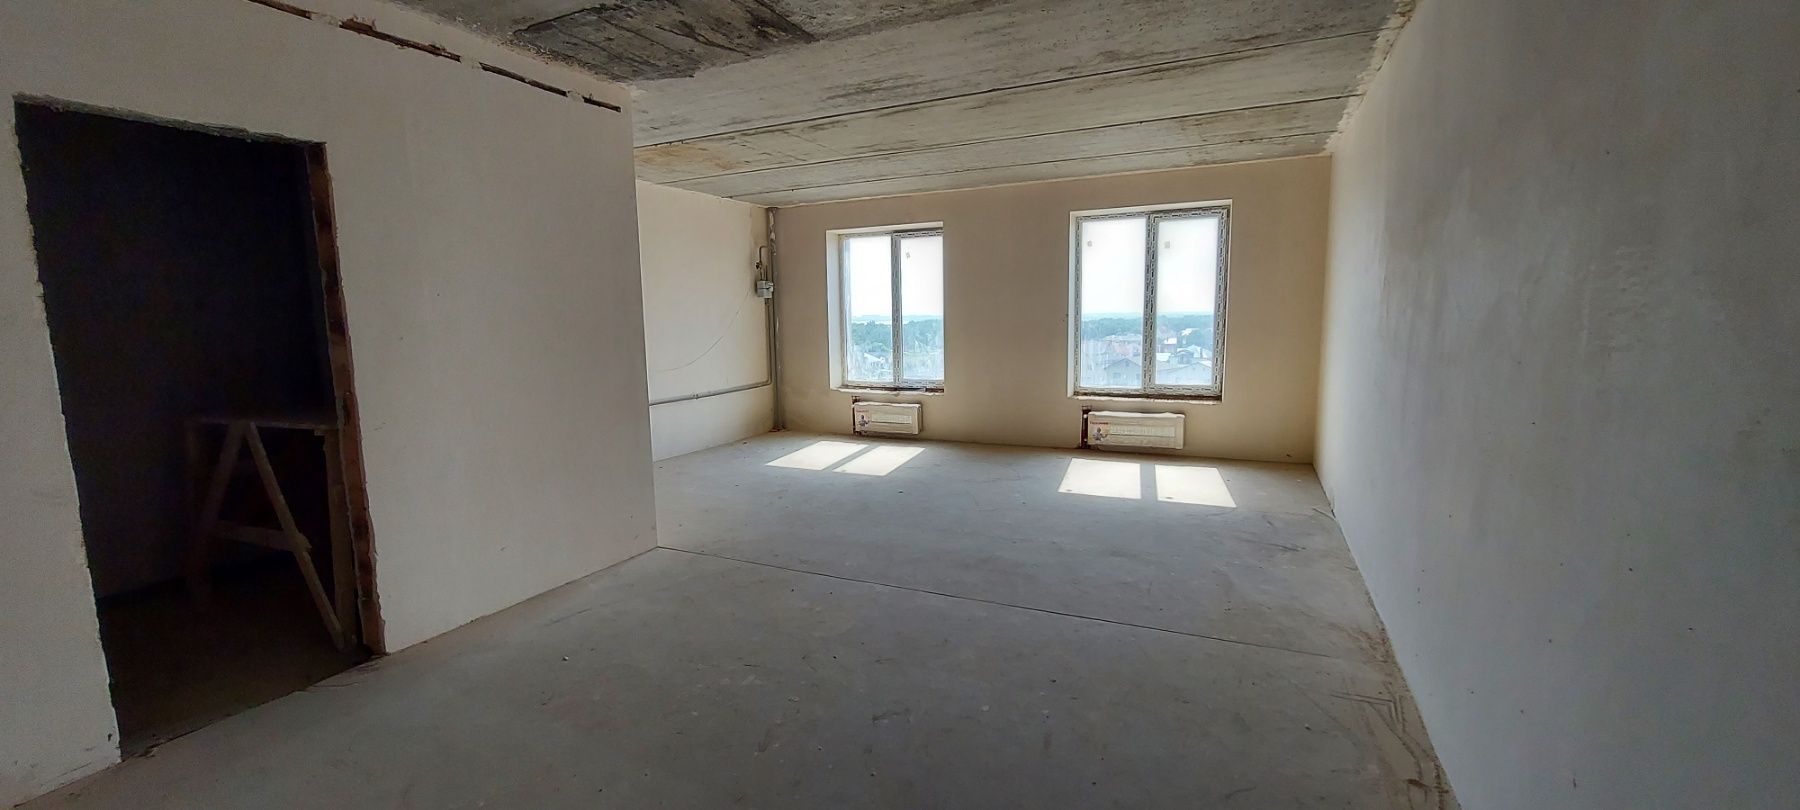 В продаже 2-х комнатная квартира в ЖК Ривьера Сити с видом на море ID 49444 (Фото 8)